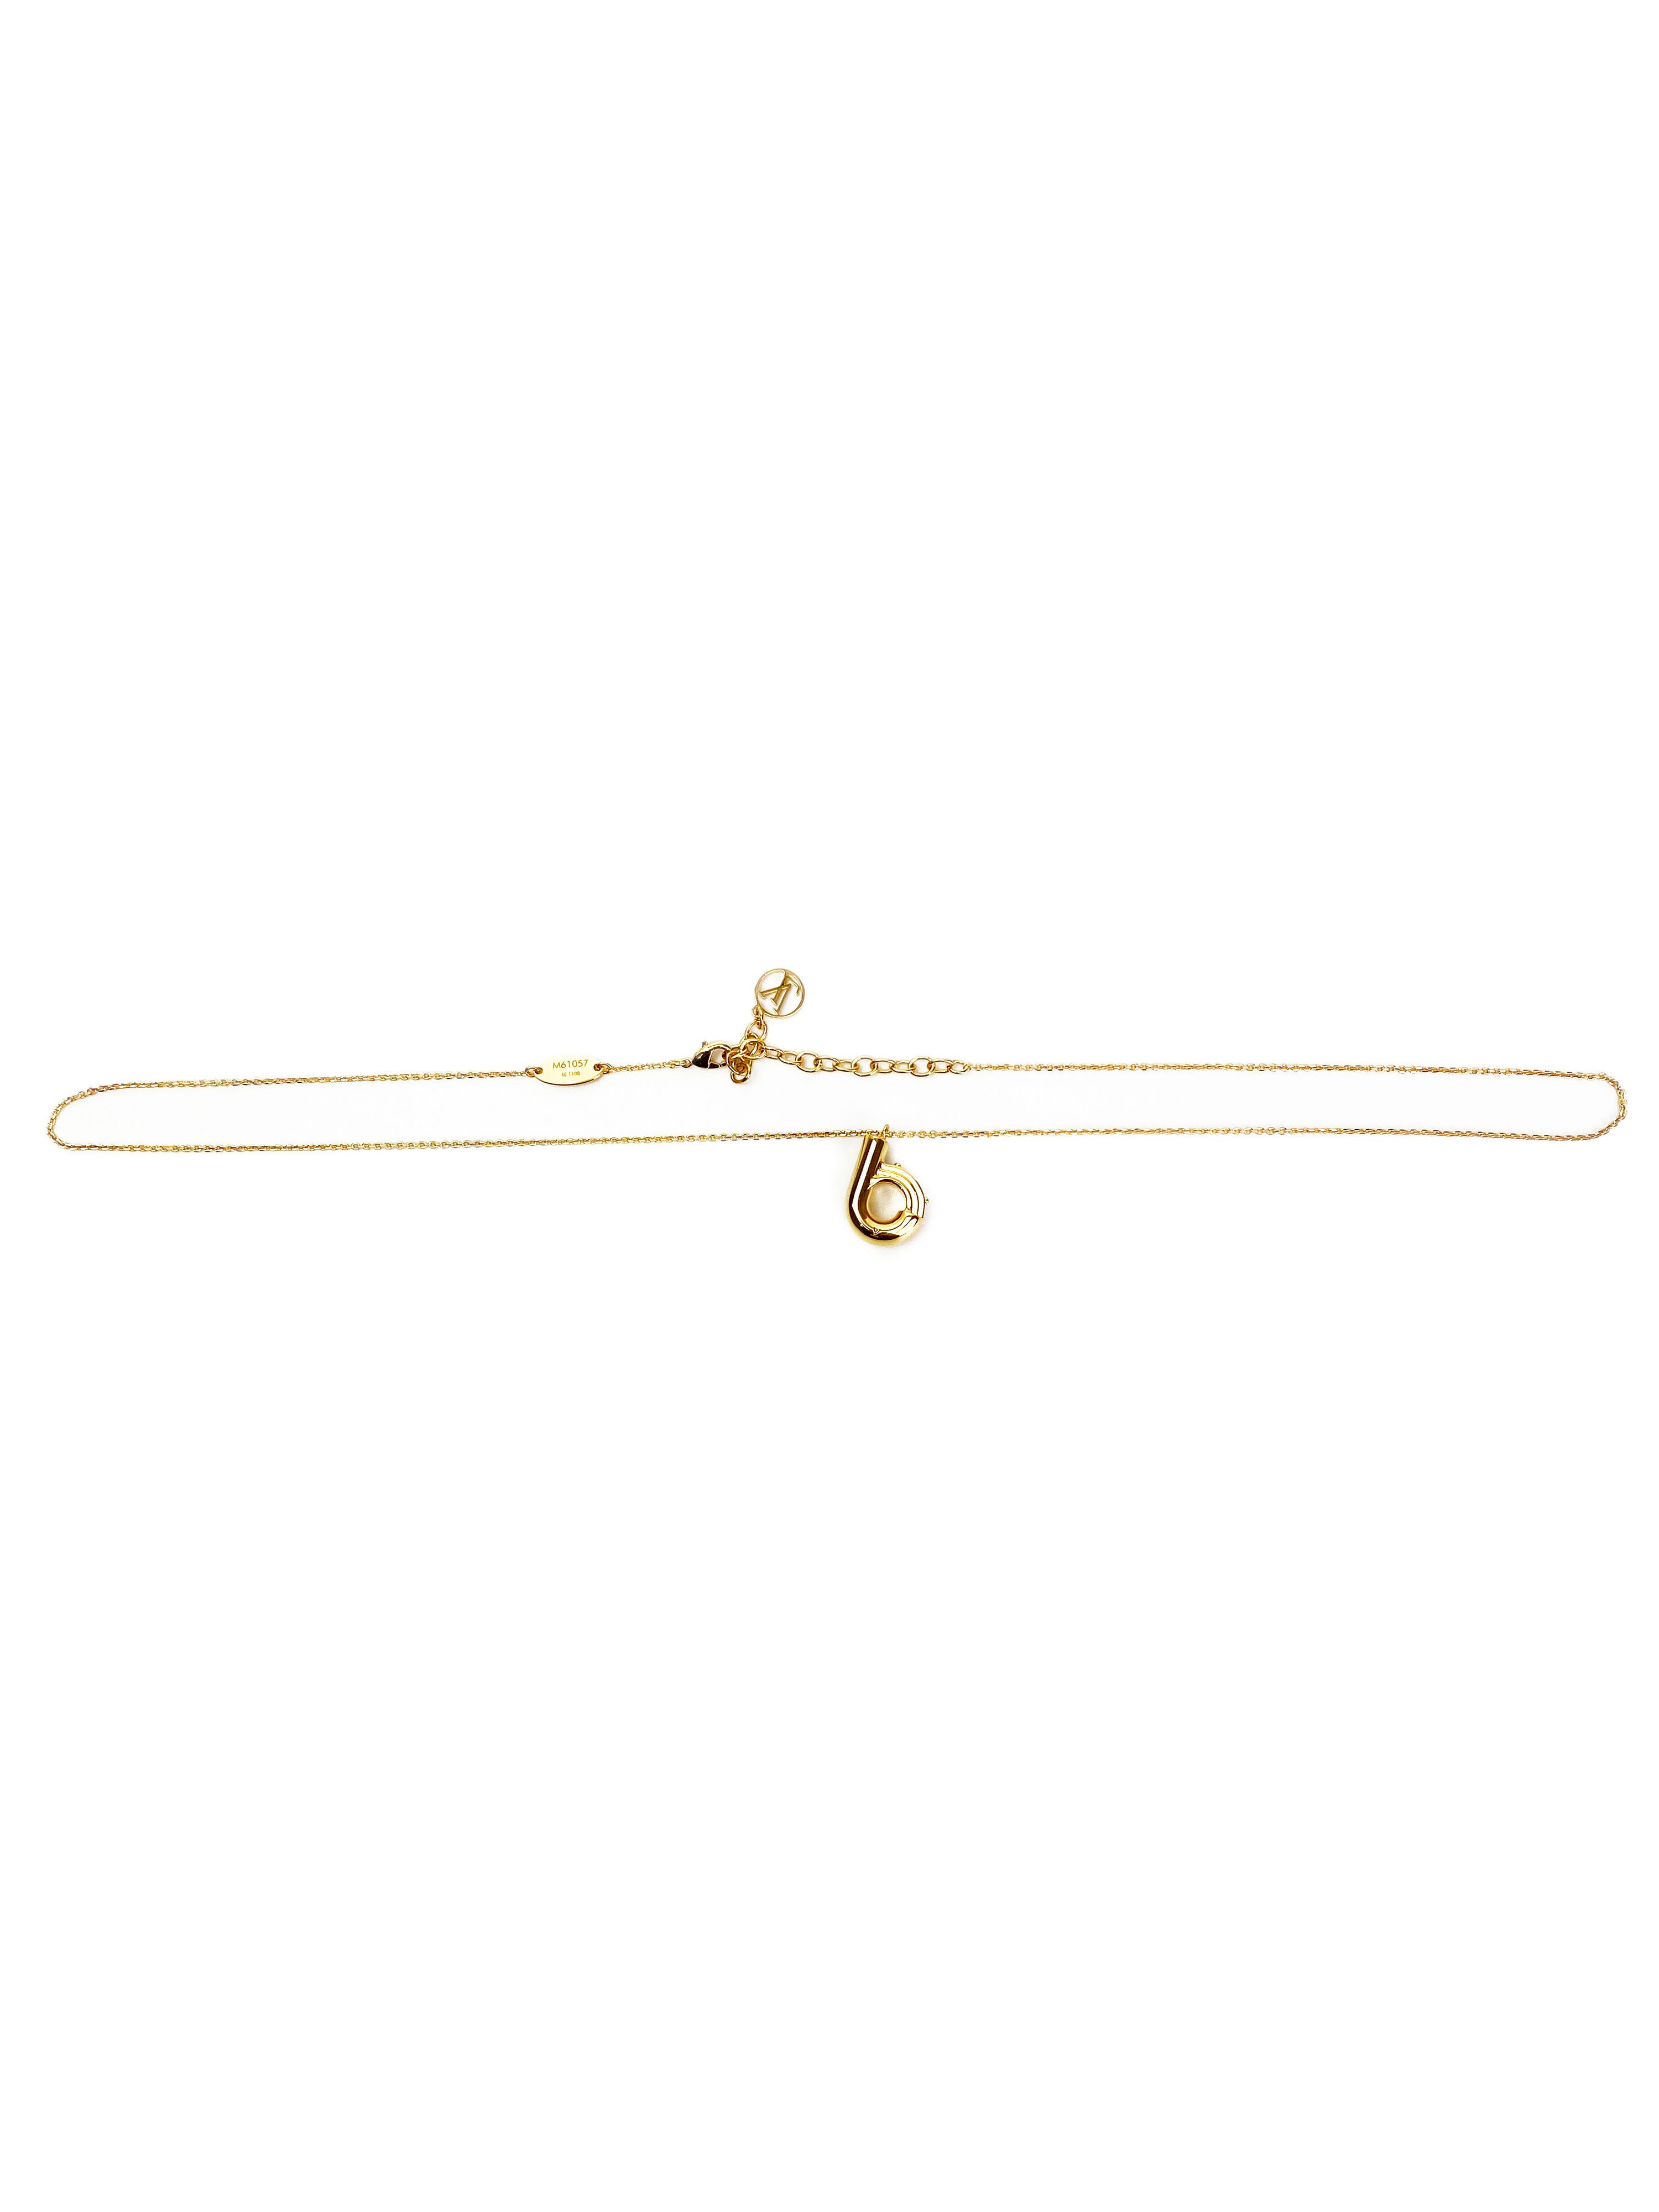 Louis Vuitton Gold LV & Me, Letter B Necklace